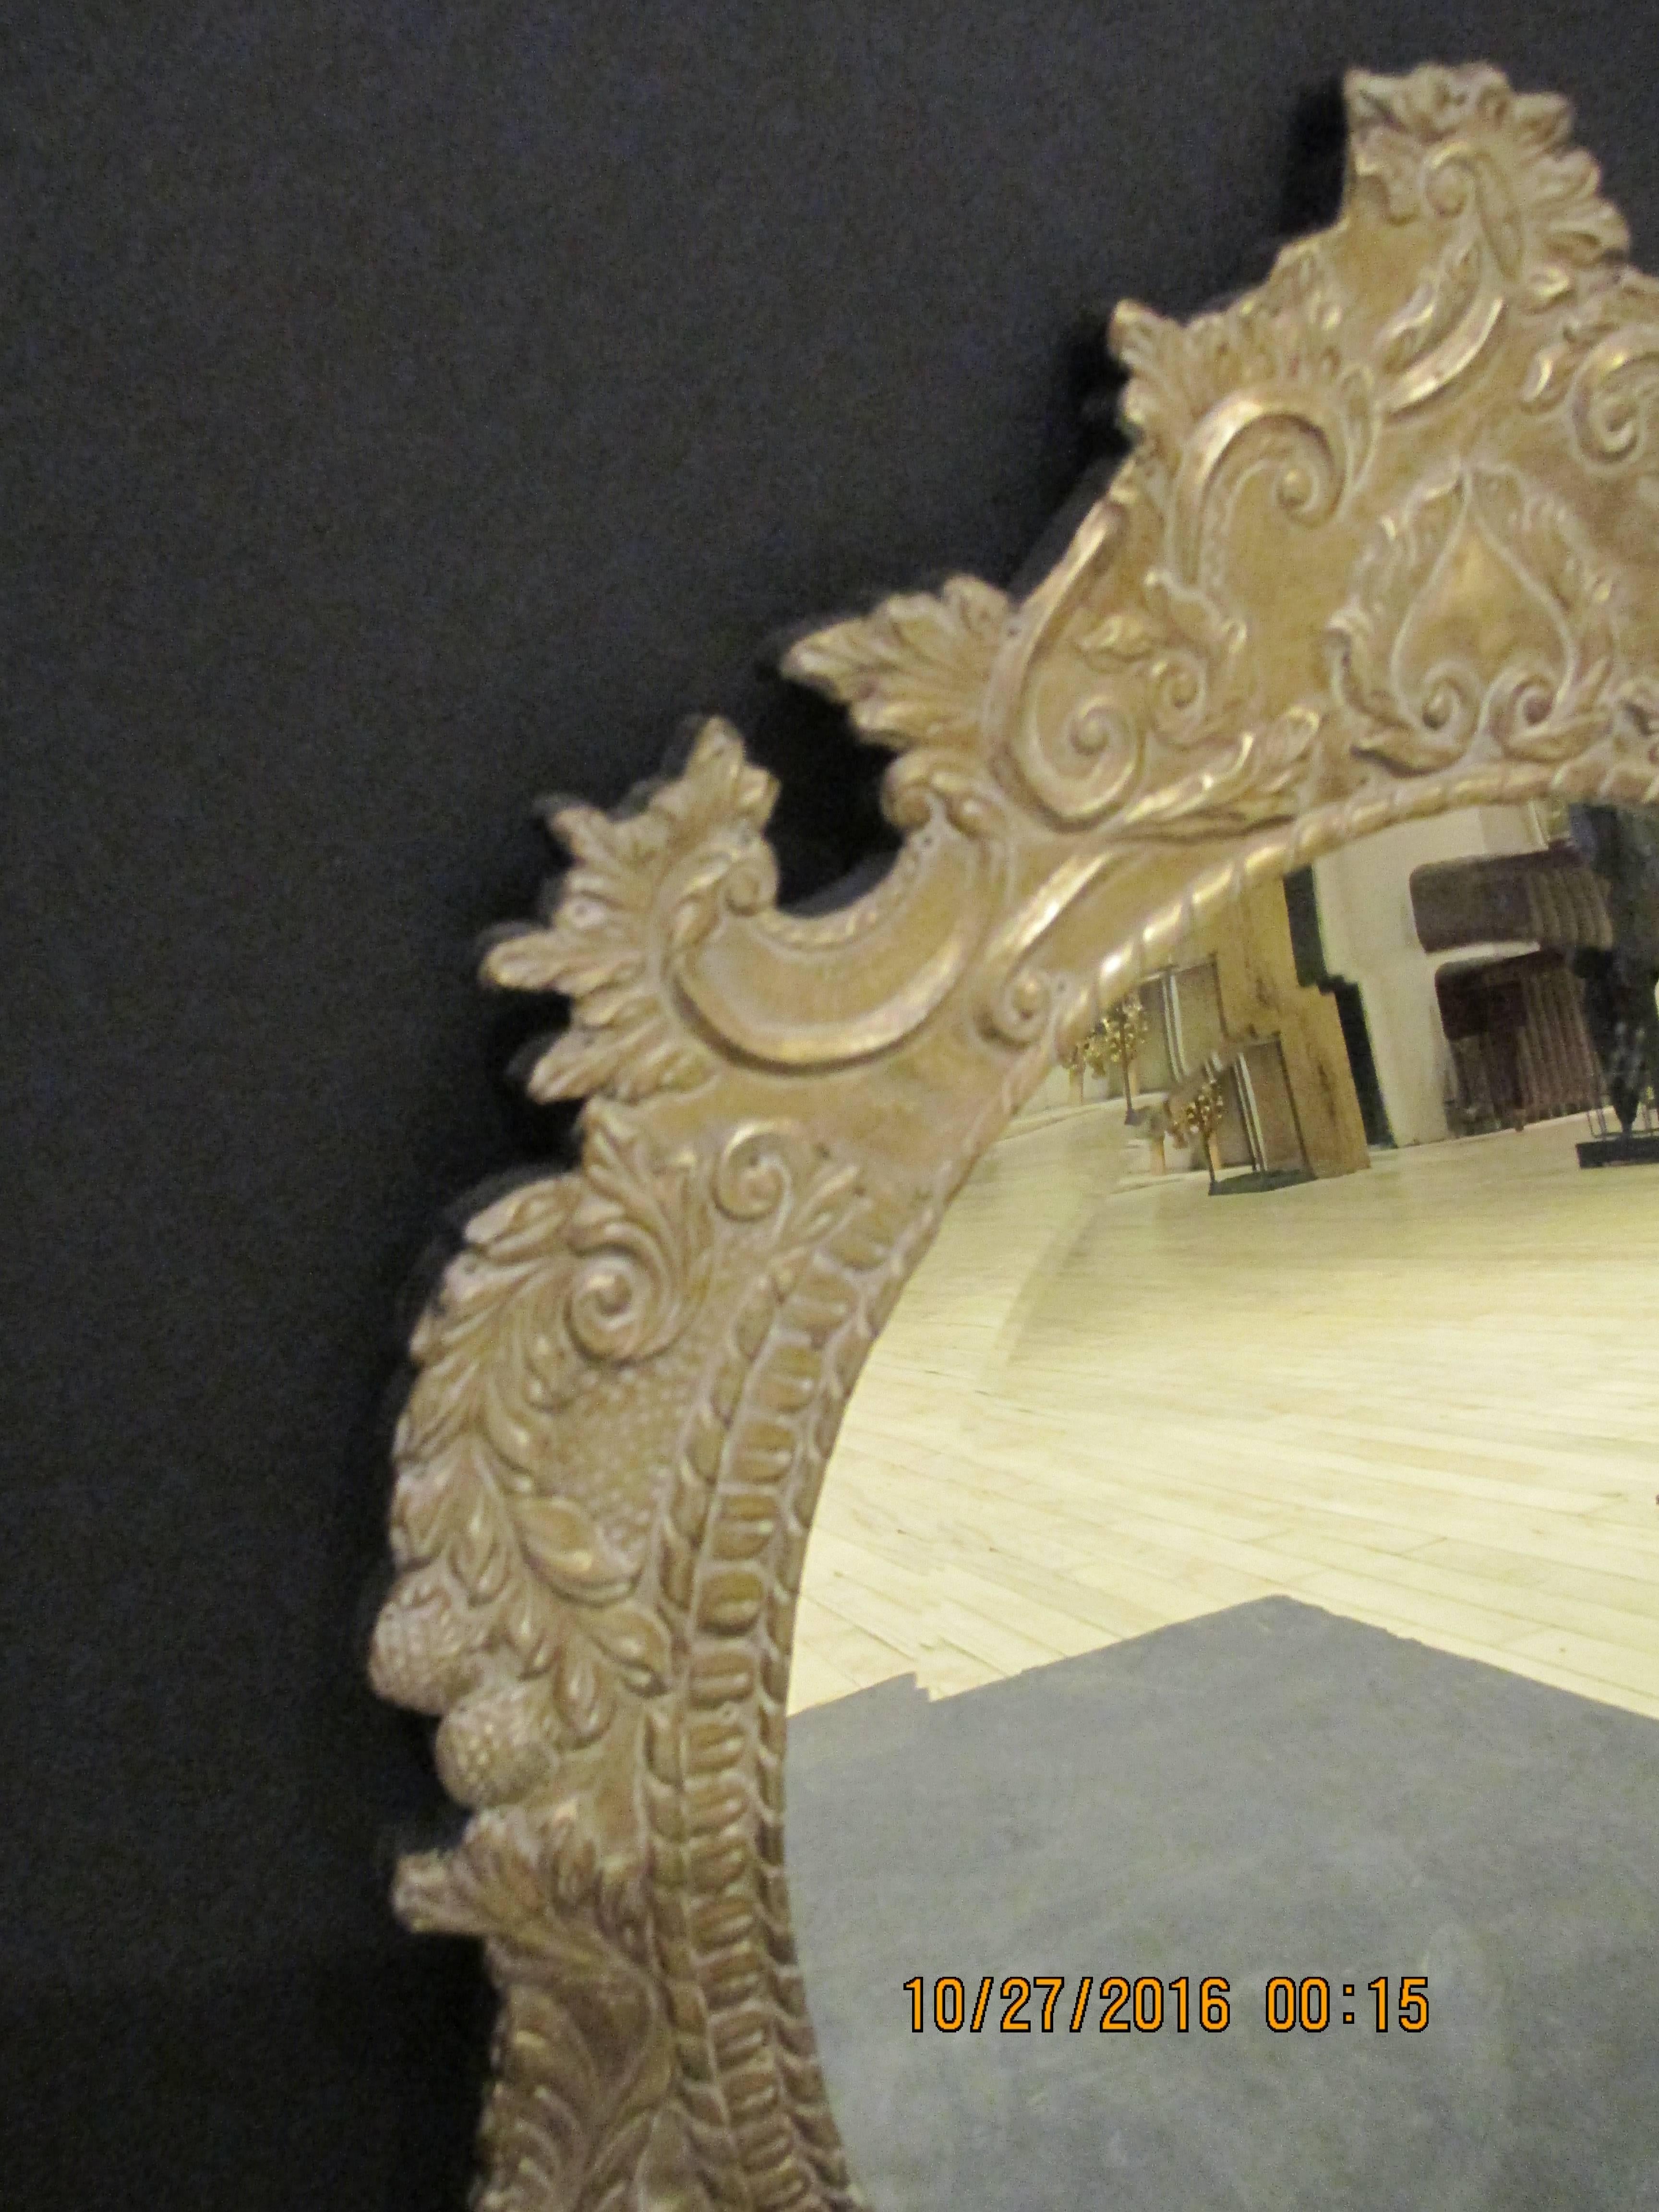 Ovaler metallverkleideter Spiegel.
Maße: H 26